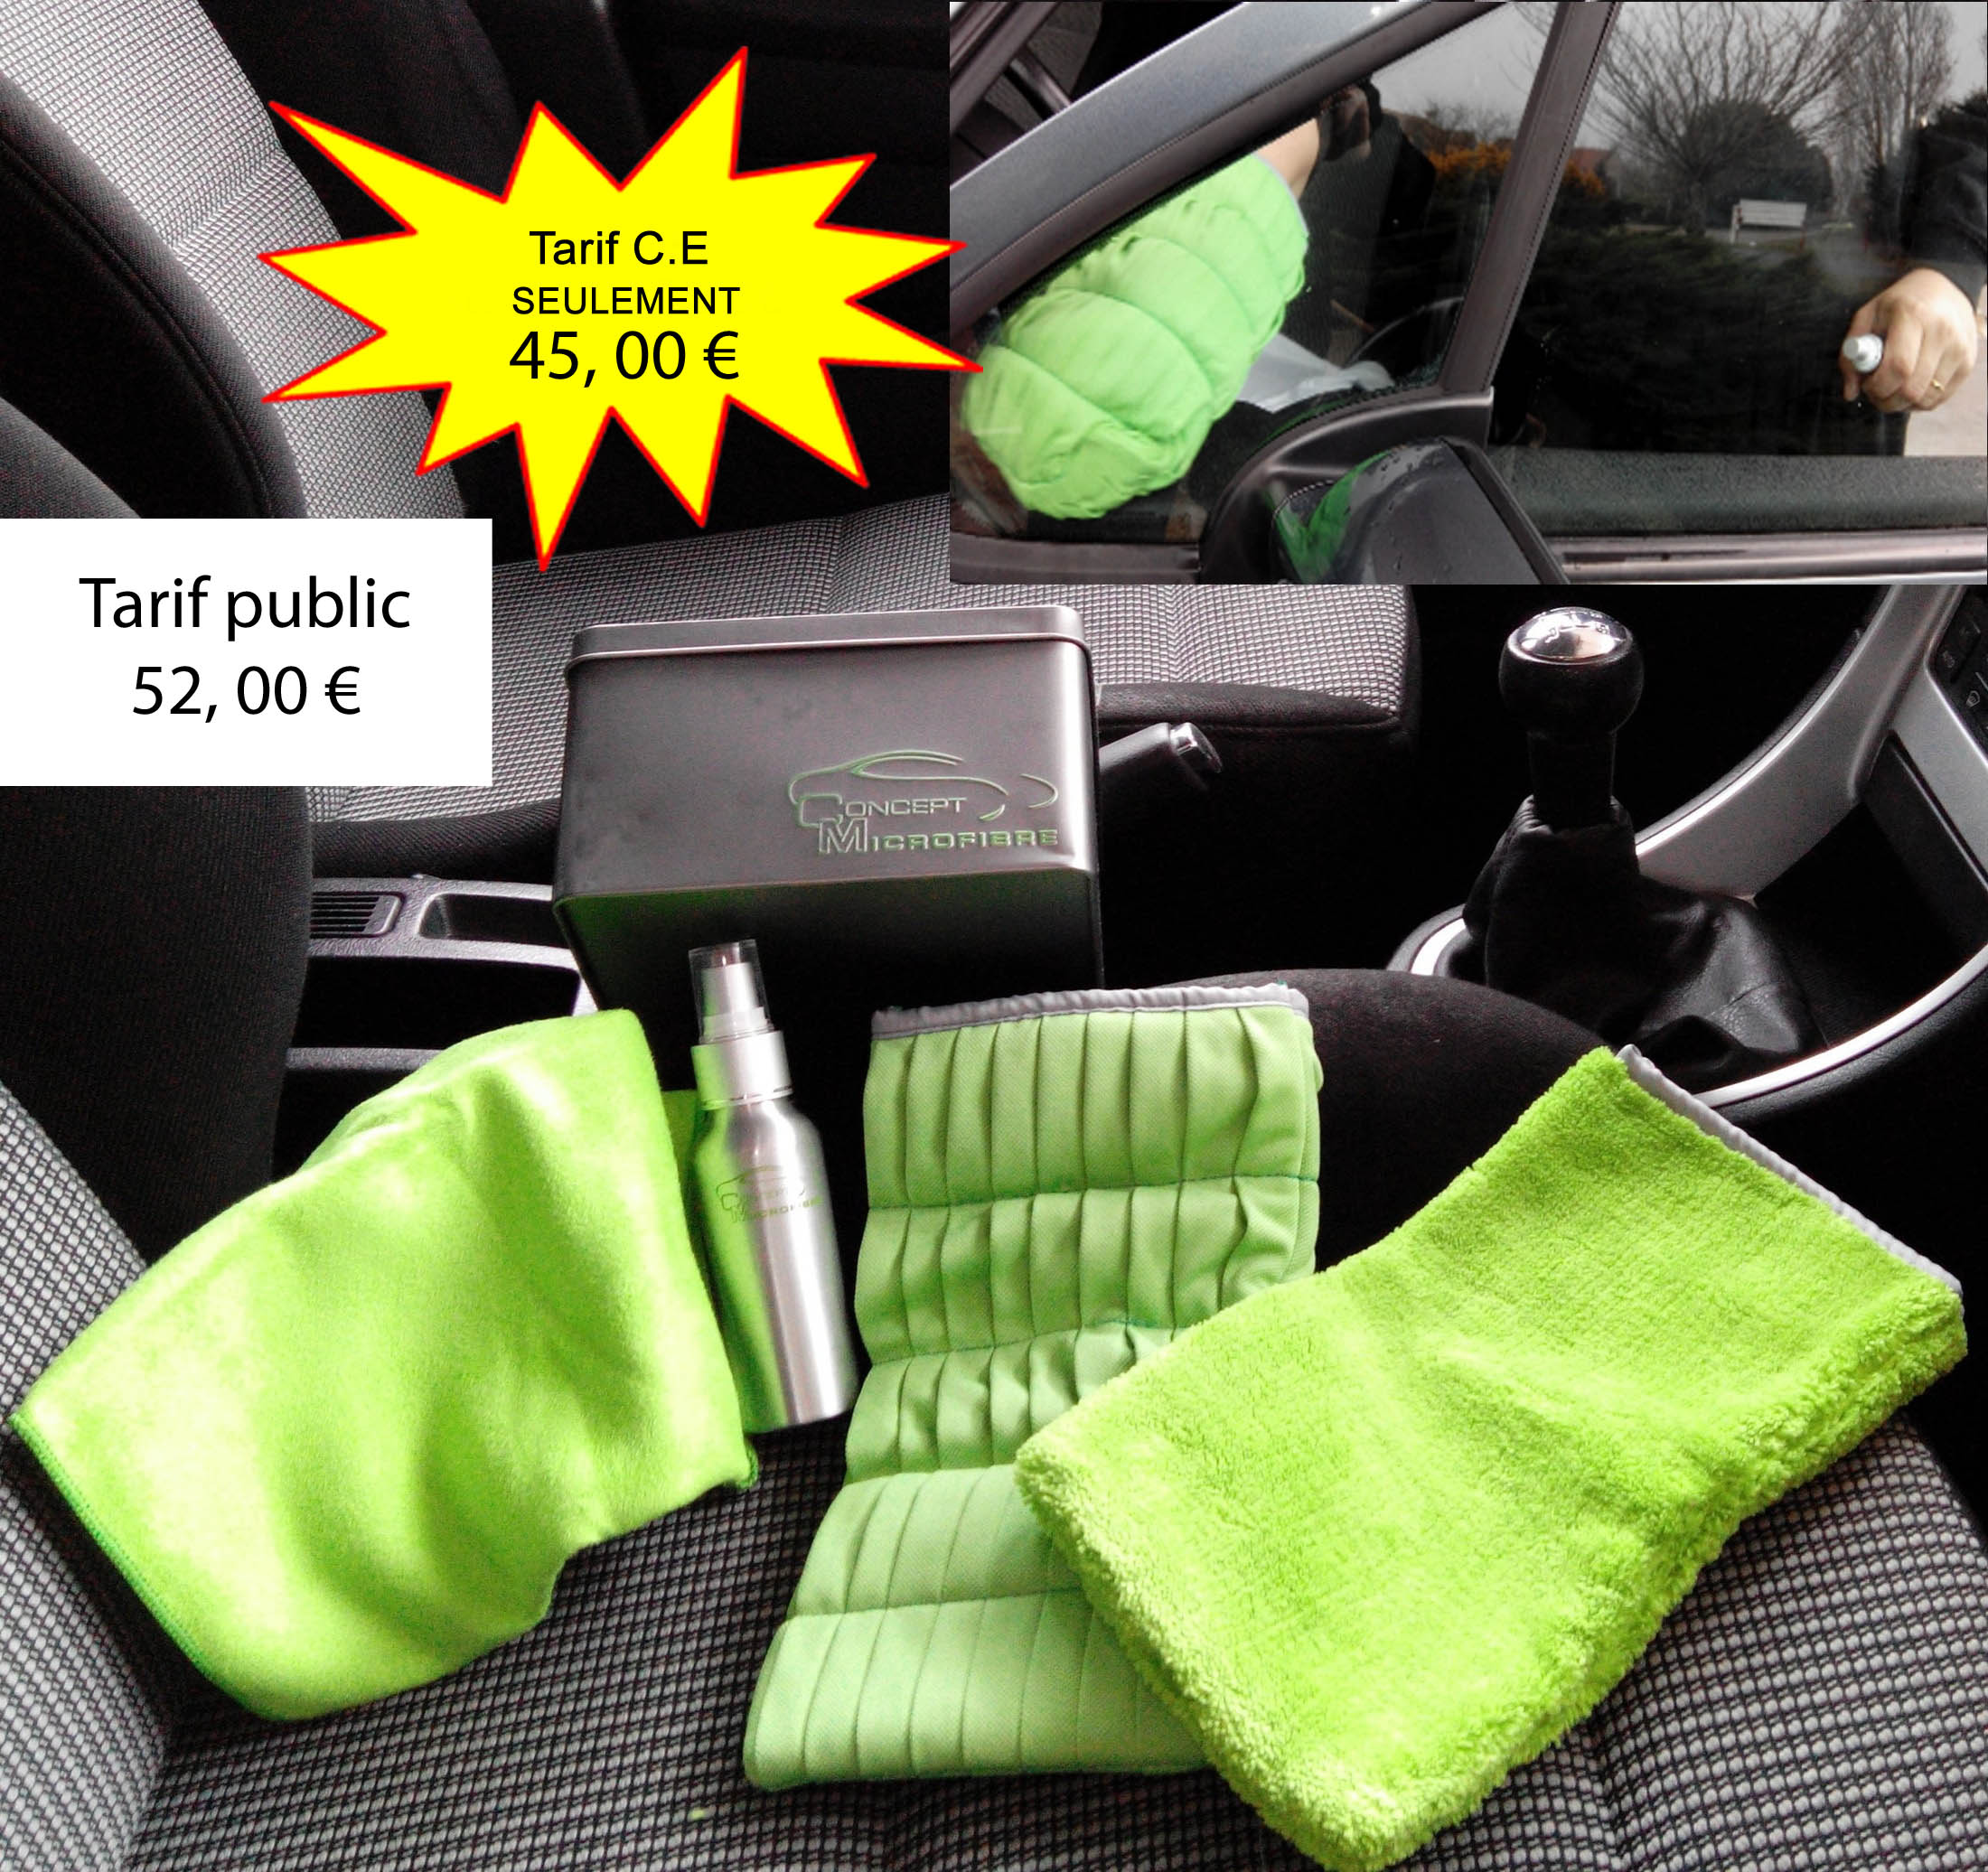 Kit de microfibres, gants & brosse pour nettoyage voiture 